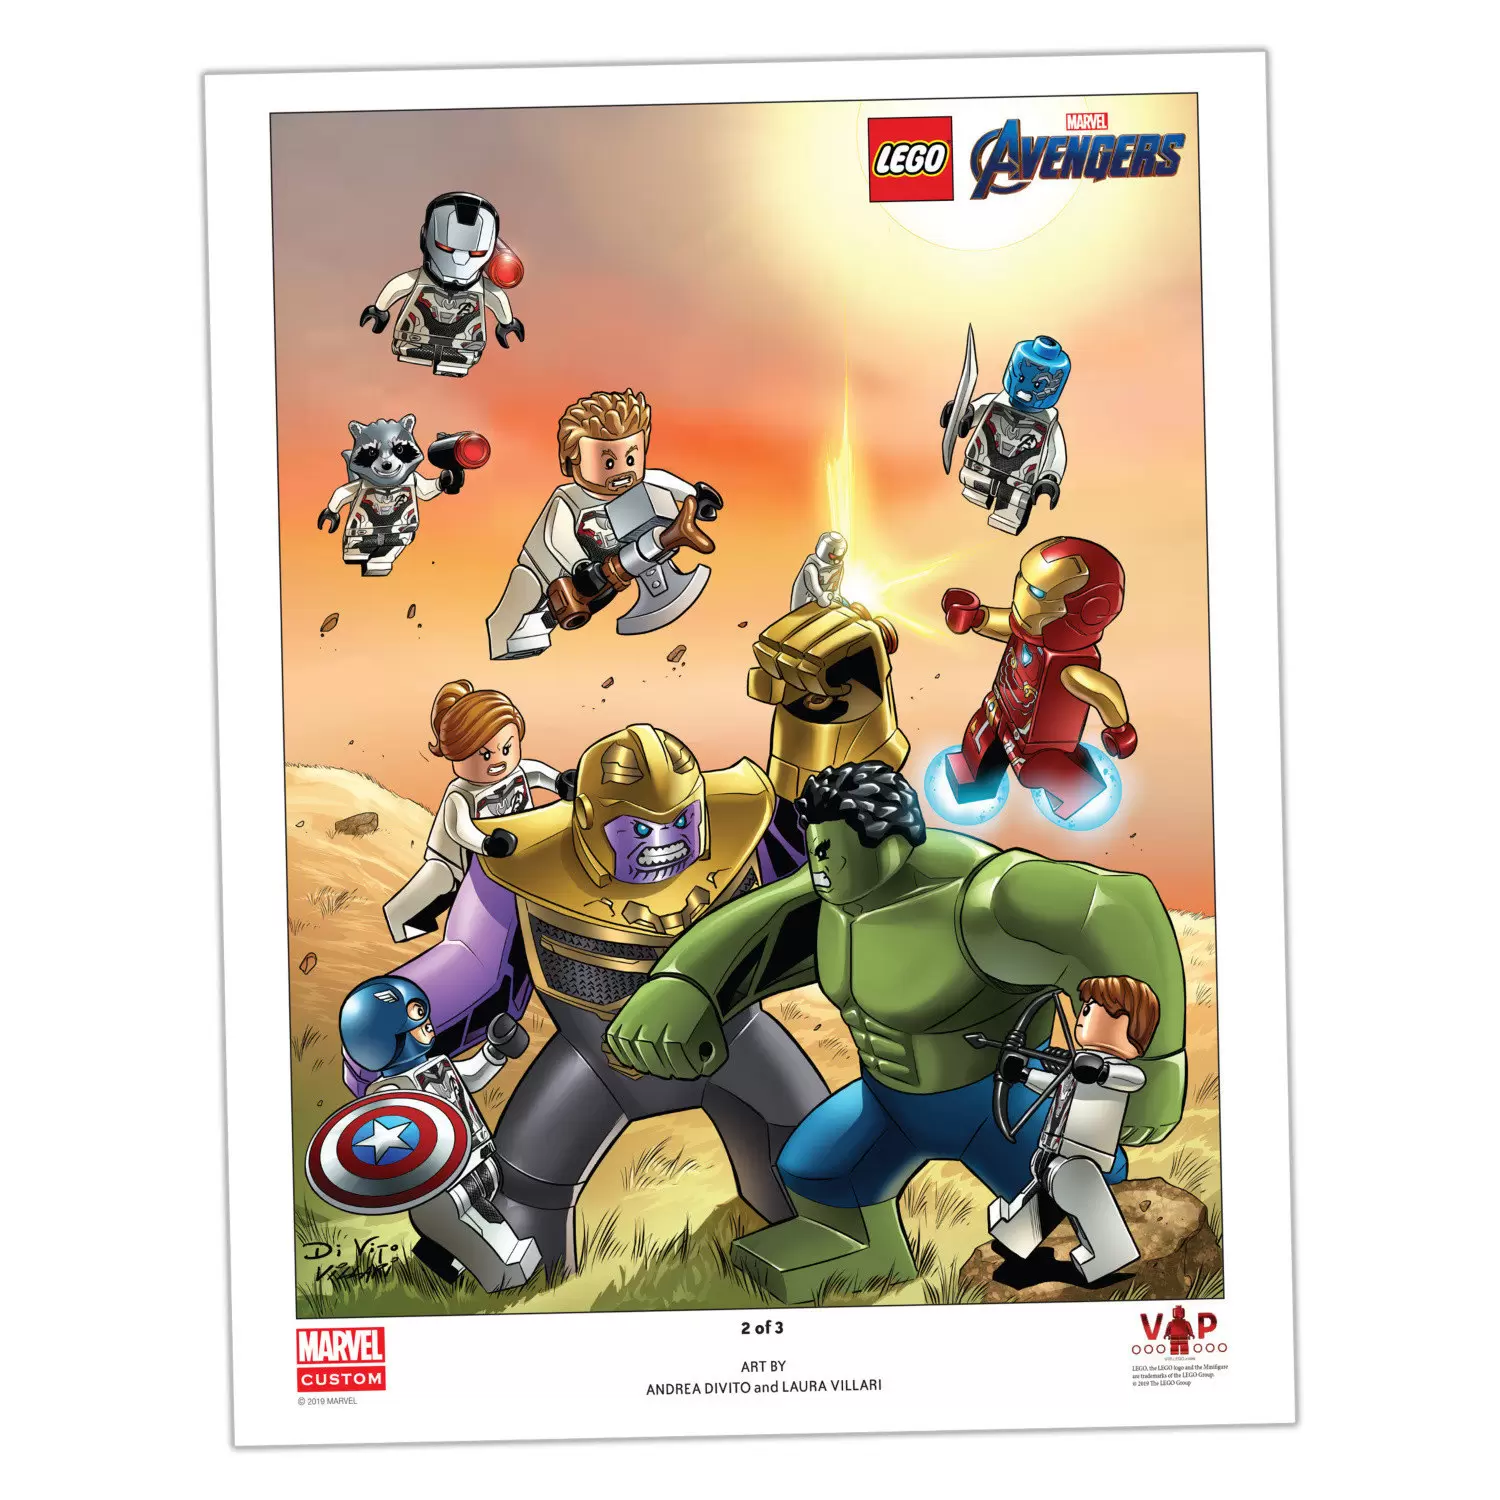 LEGO MARVEL Super Heroes - Avengers Endgame Art Print